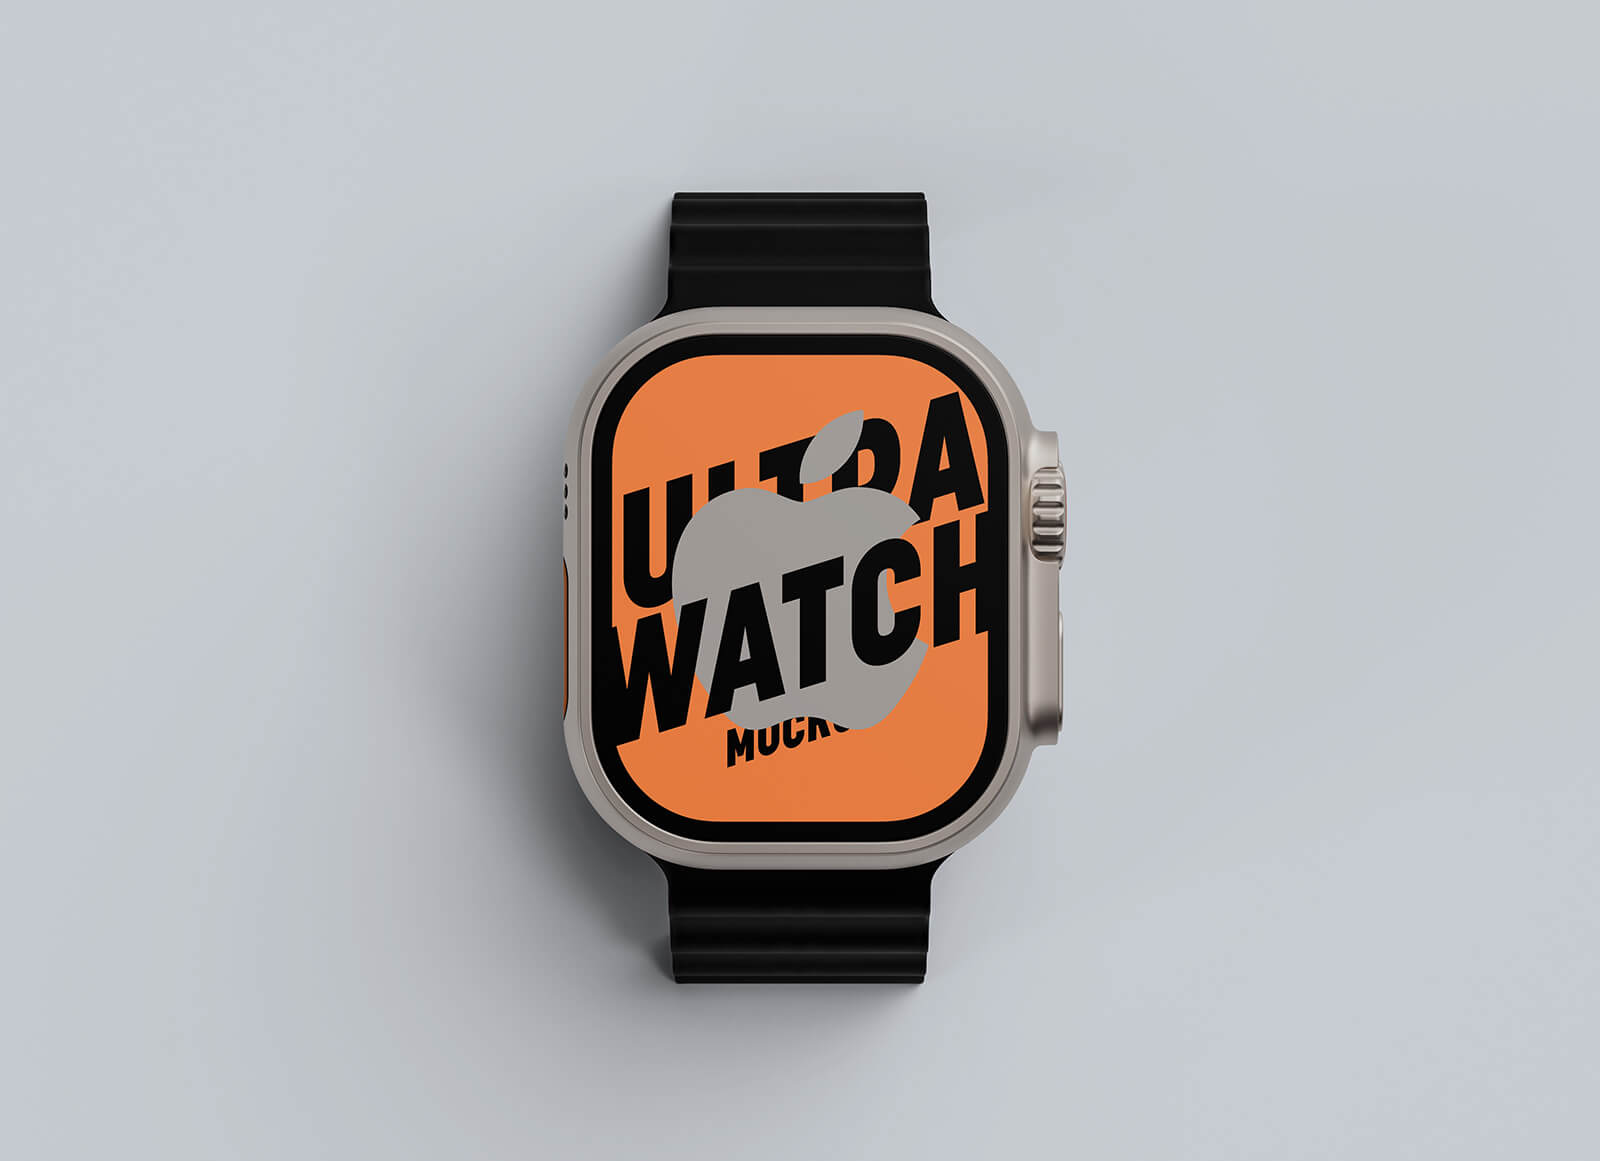 Apple Ultra Watchのトップビューモックアップ